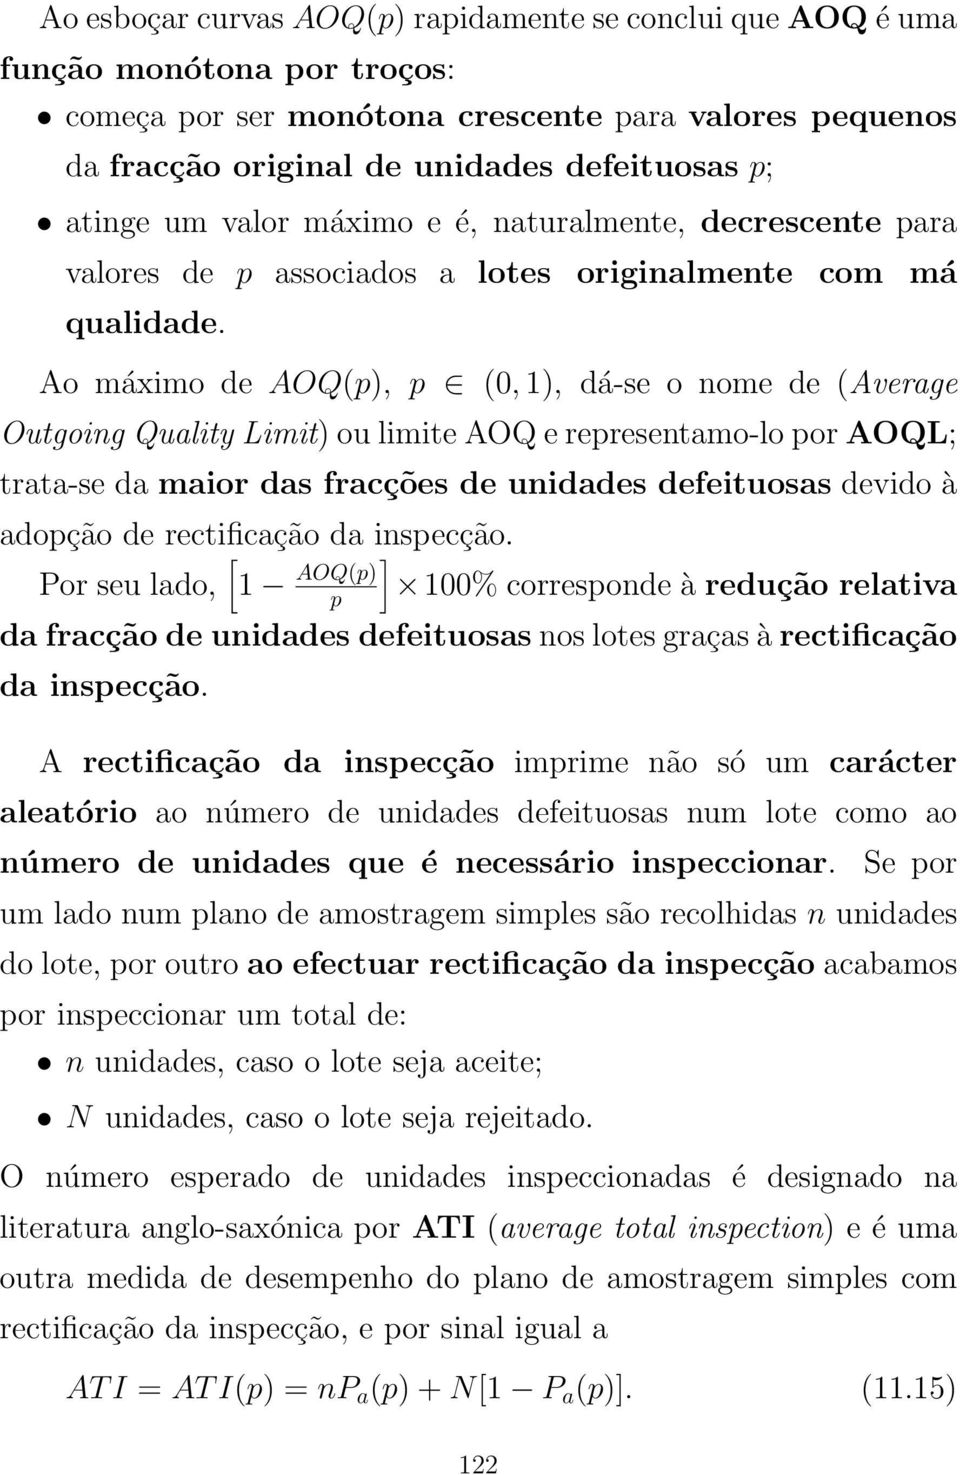 Ao máximo de AOQ(p), p (0, 1), dá-se o nome de (Average Outgoing Quality Limit) ou limite AOQ e representamo-lo por AOQL; trata-se da maior das fracções de unidades defeituosas devido à adopção de